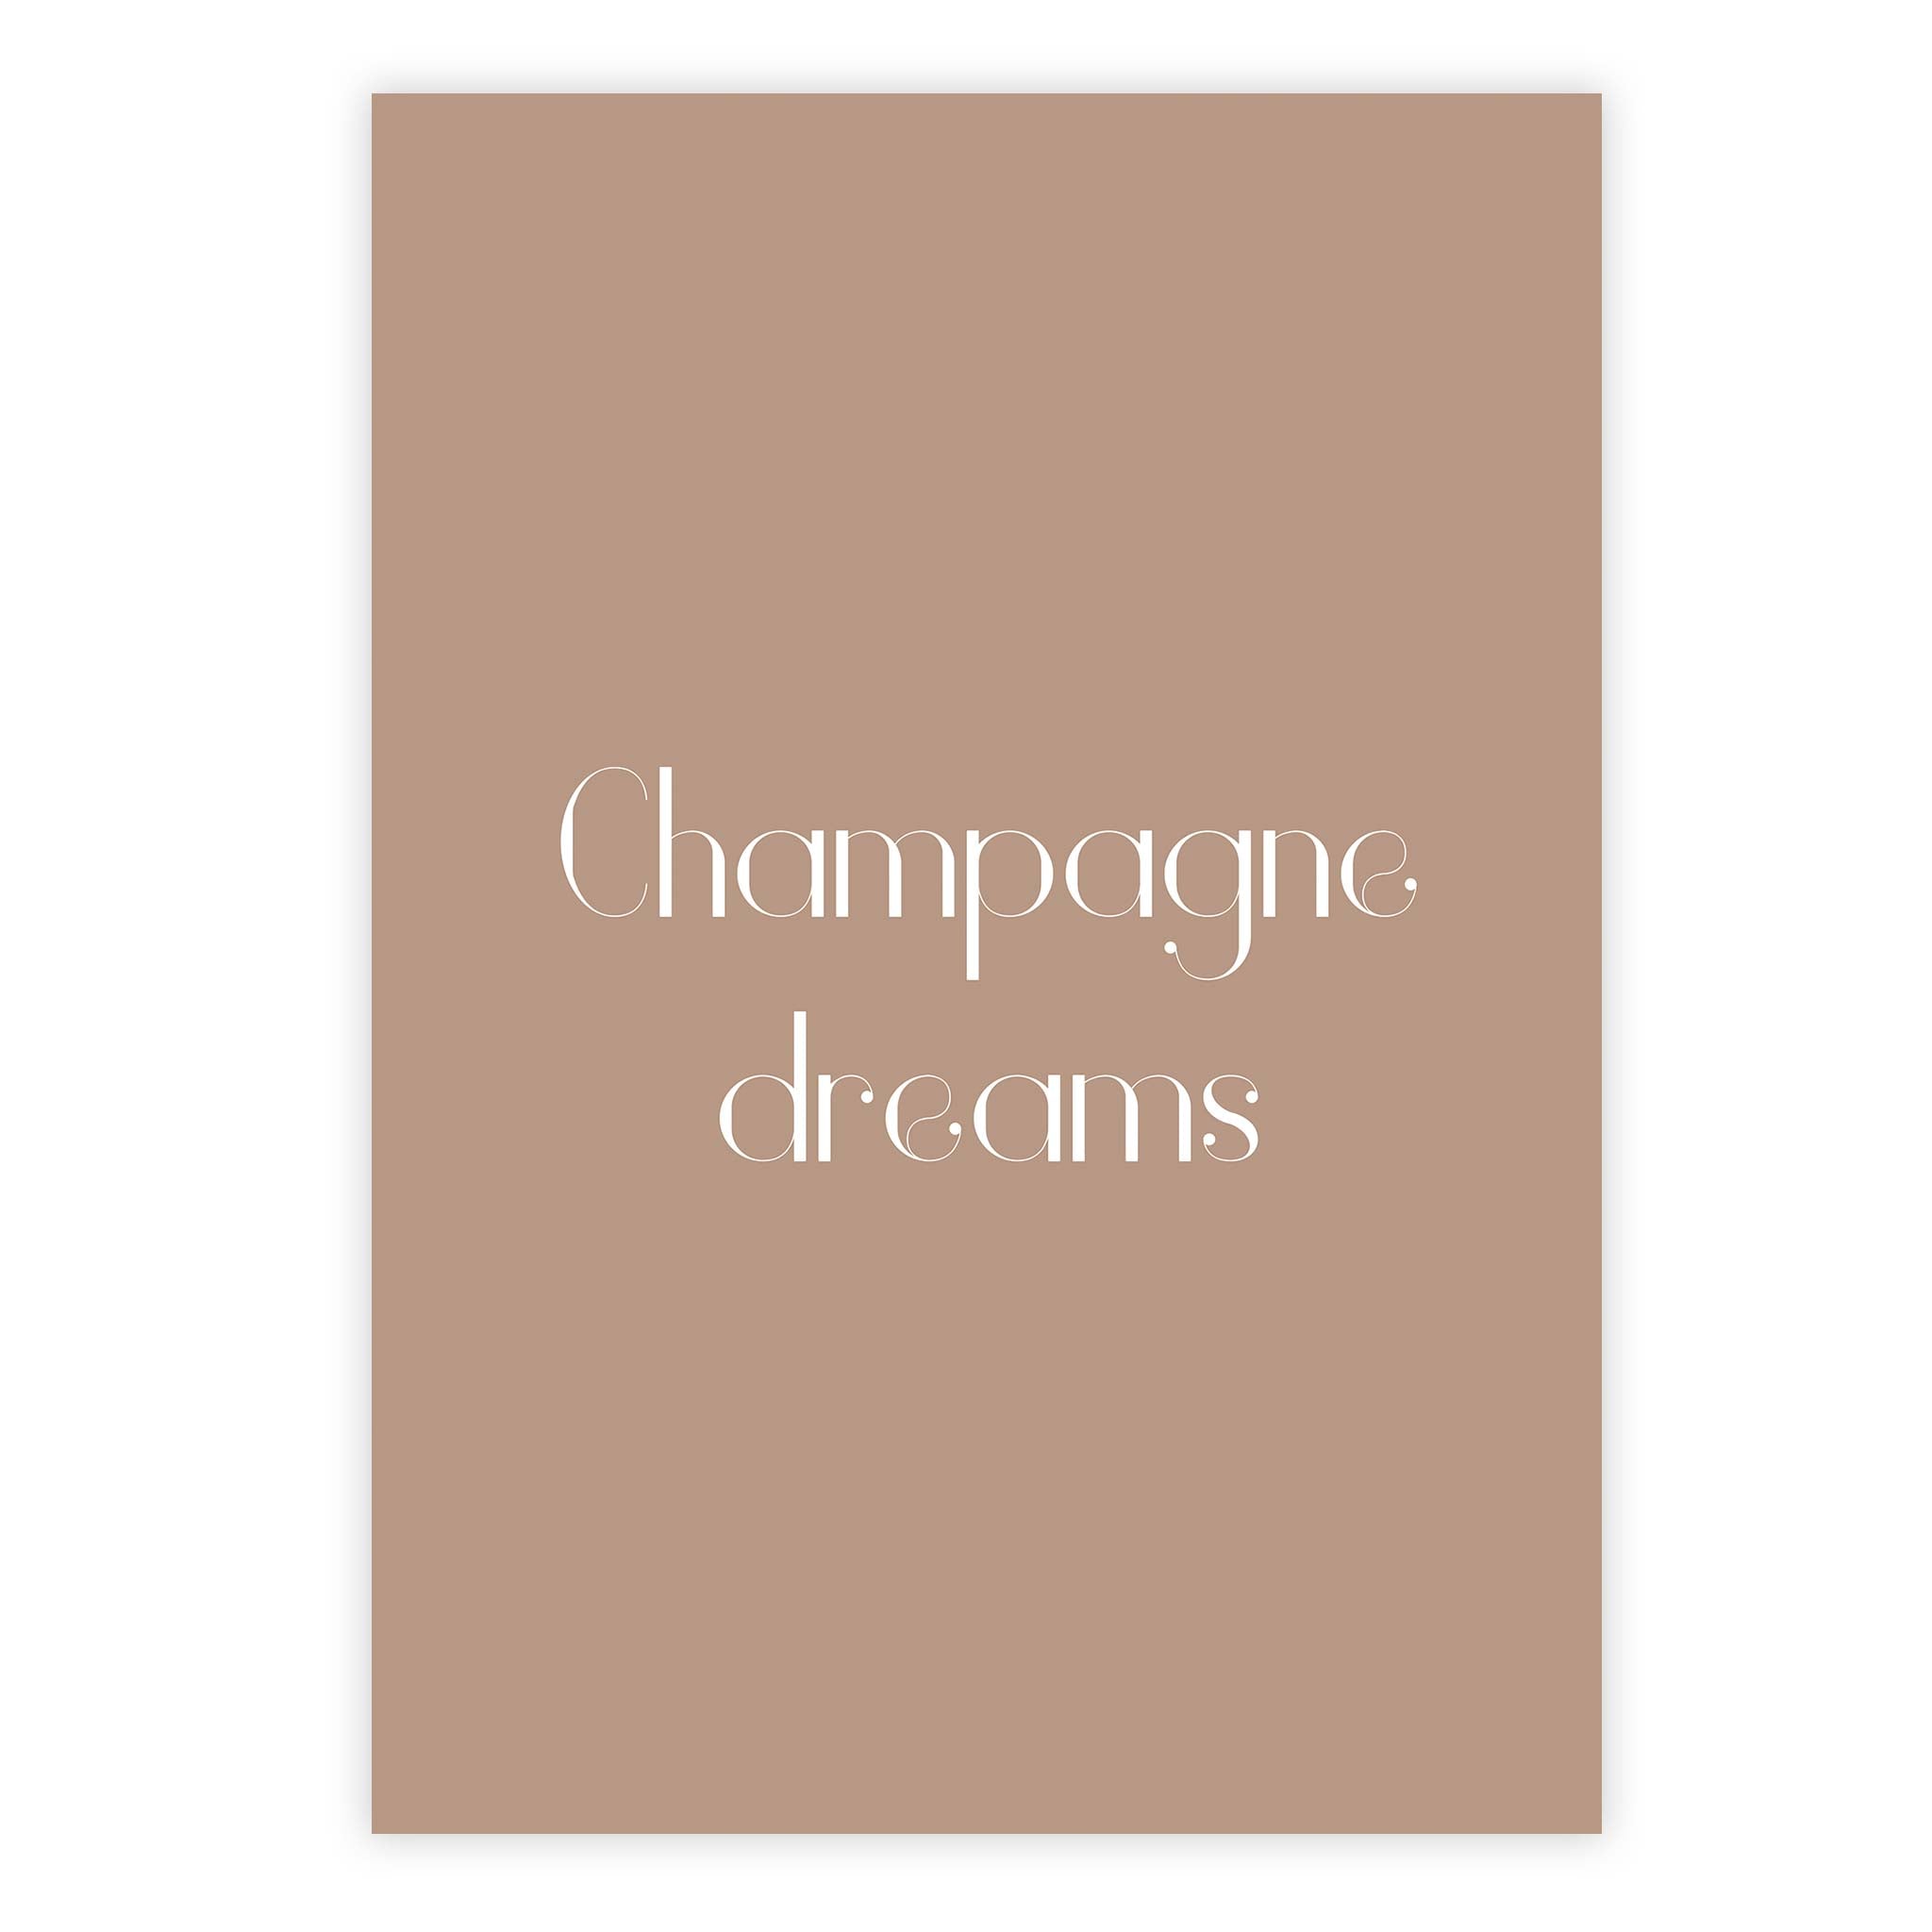 Champagne dreams